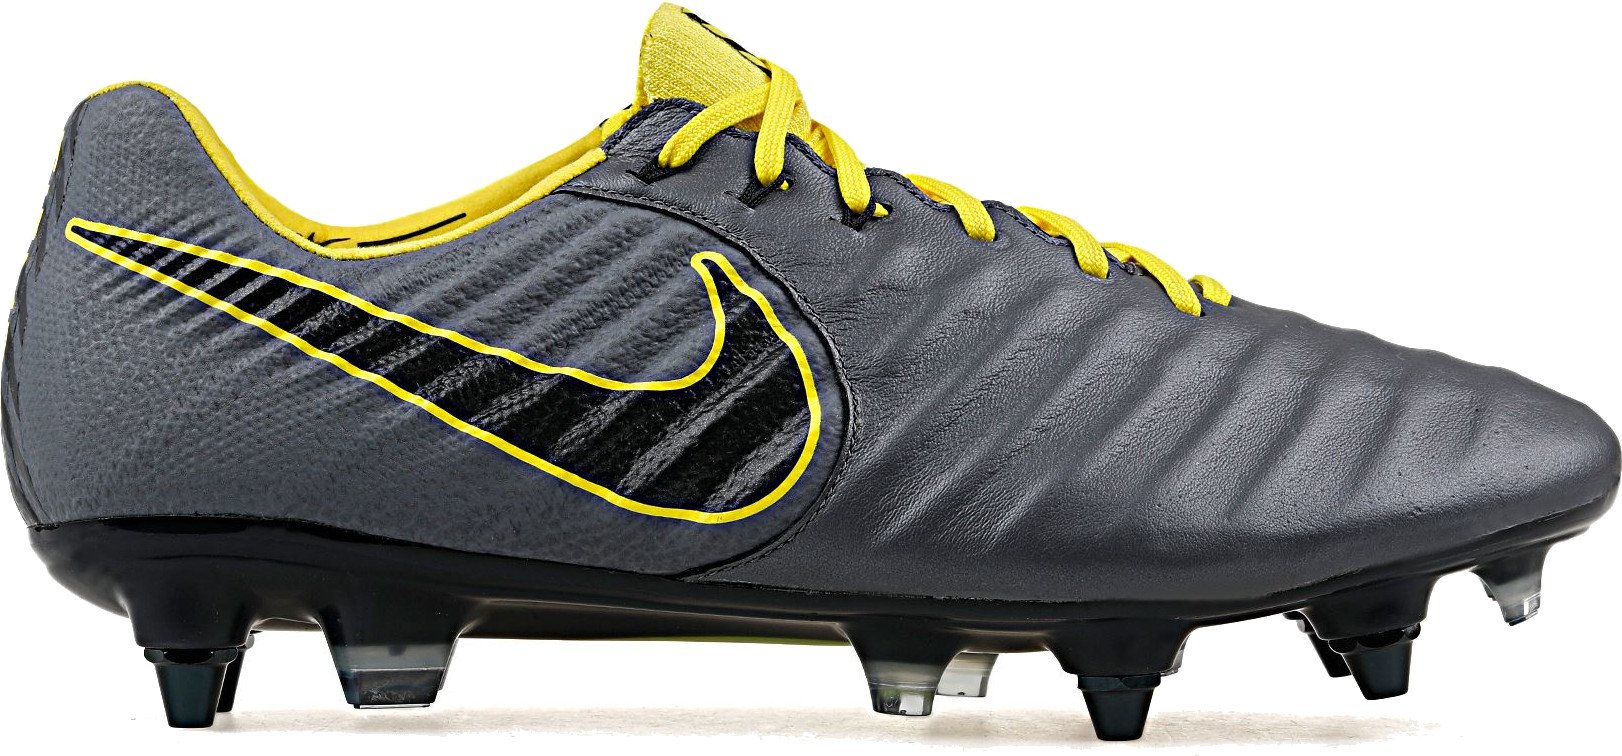 Football shoes Nike LEGEND 7 ELITE SG-PRO AC - Top4Football.com